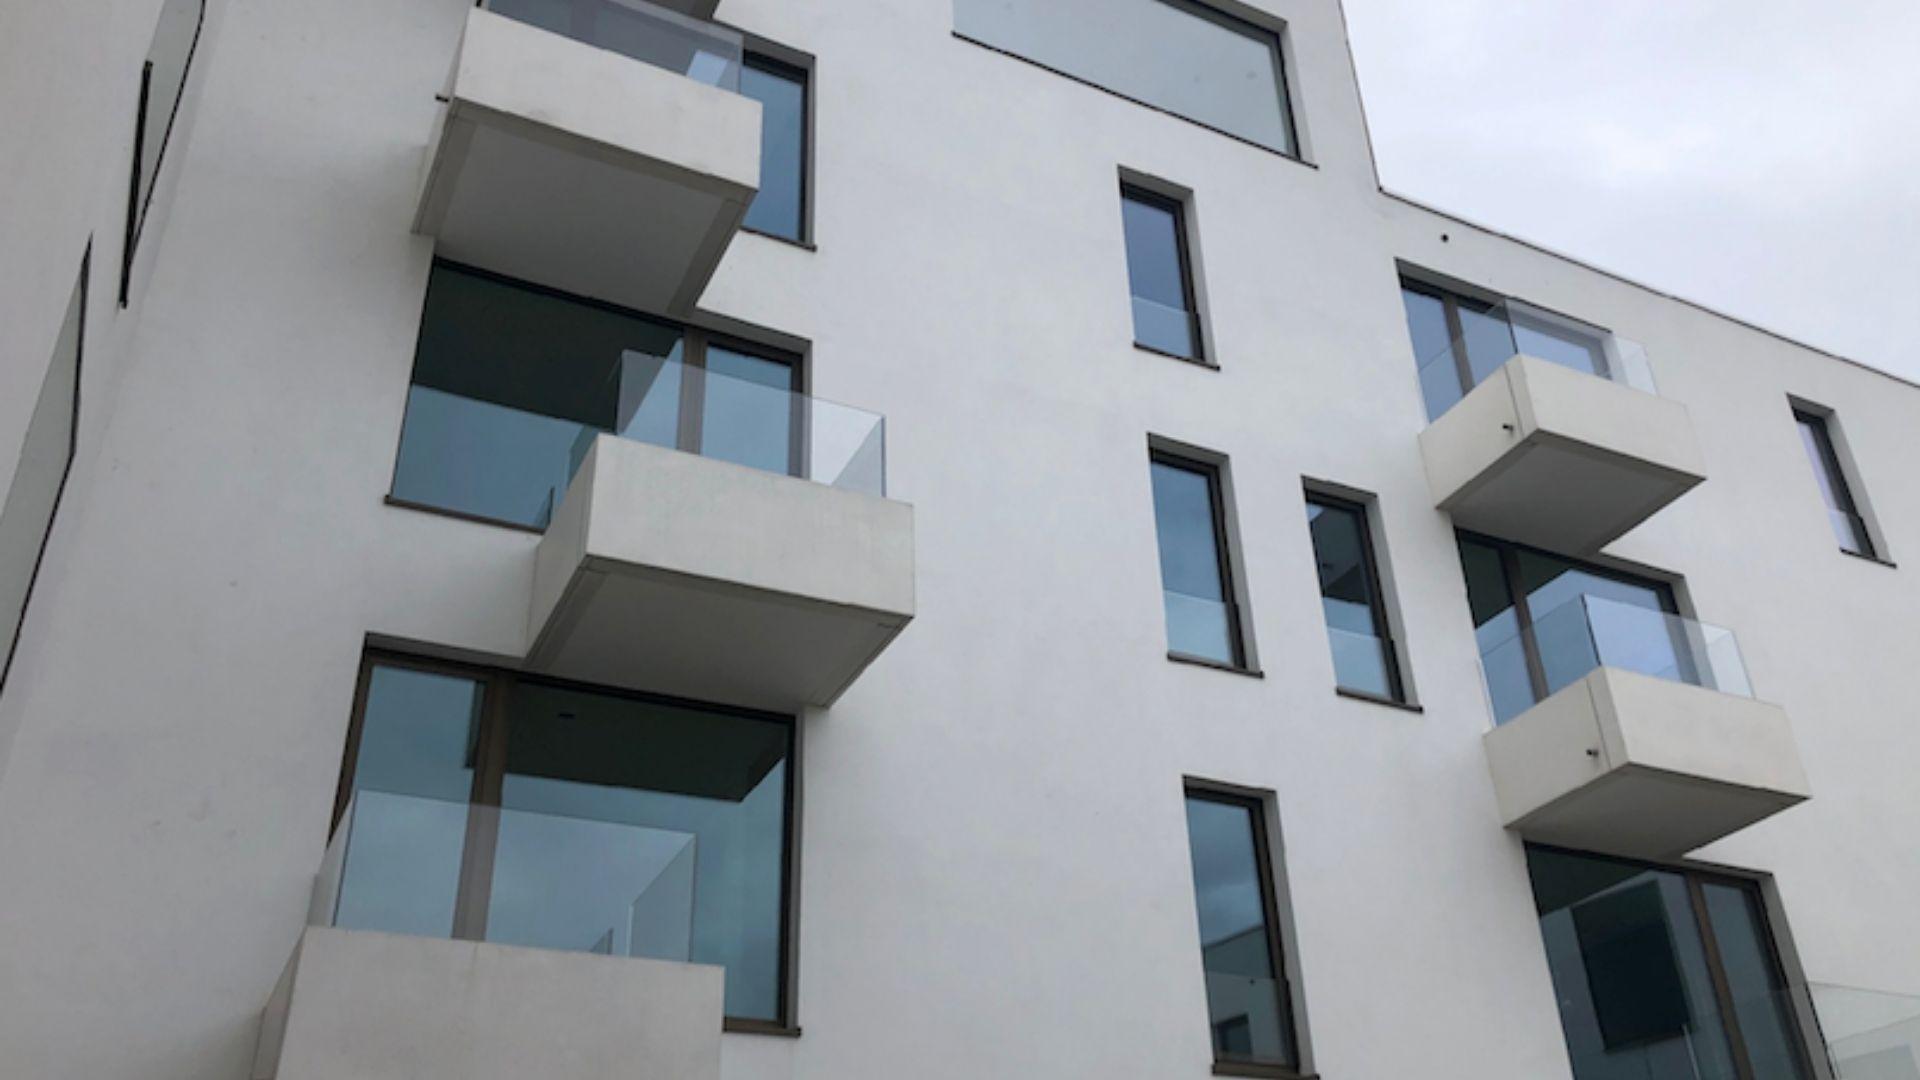 Qulaco verzorgde voor dit project in Aalter de opbouw van de kwalitatieve terrassen voor de verschillende appartementen in kwaliteitsbeton.